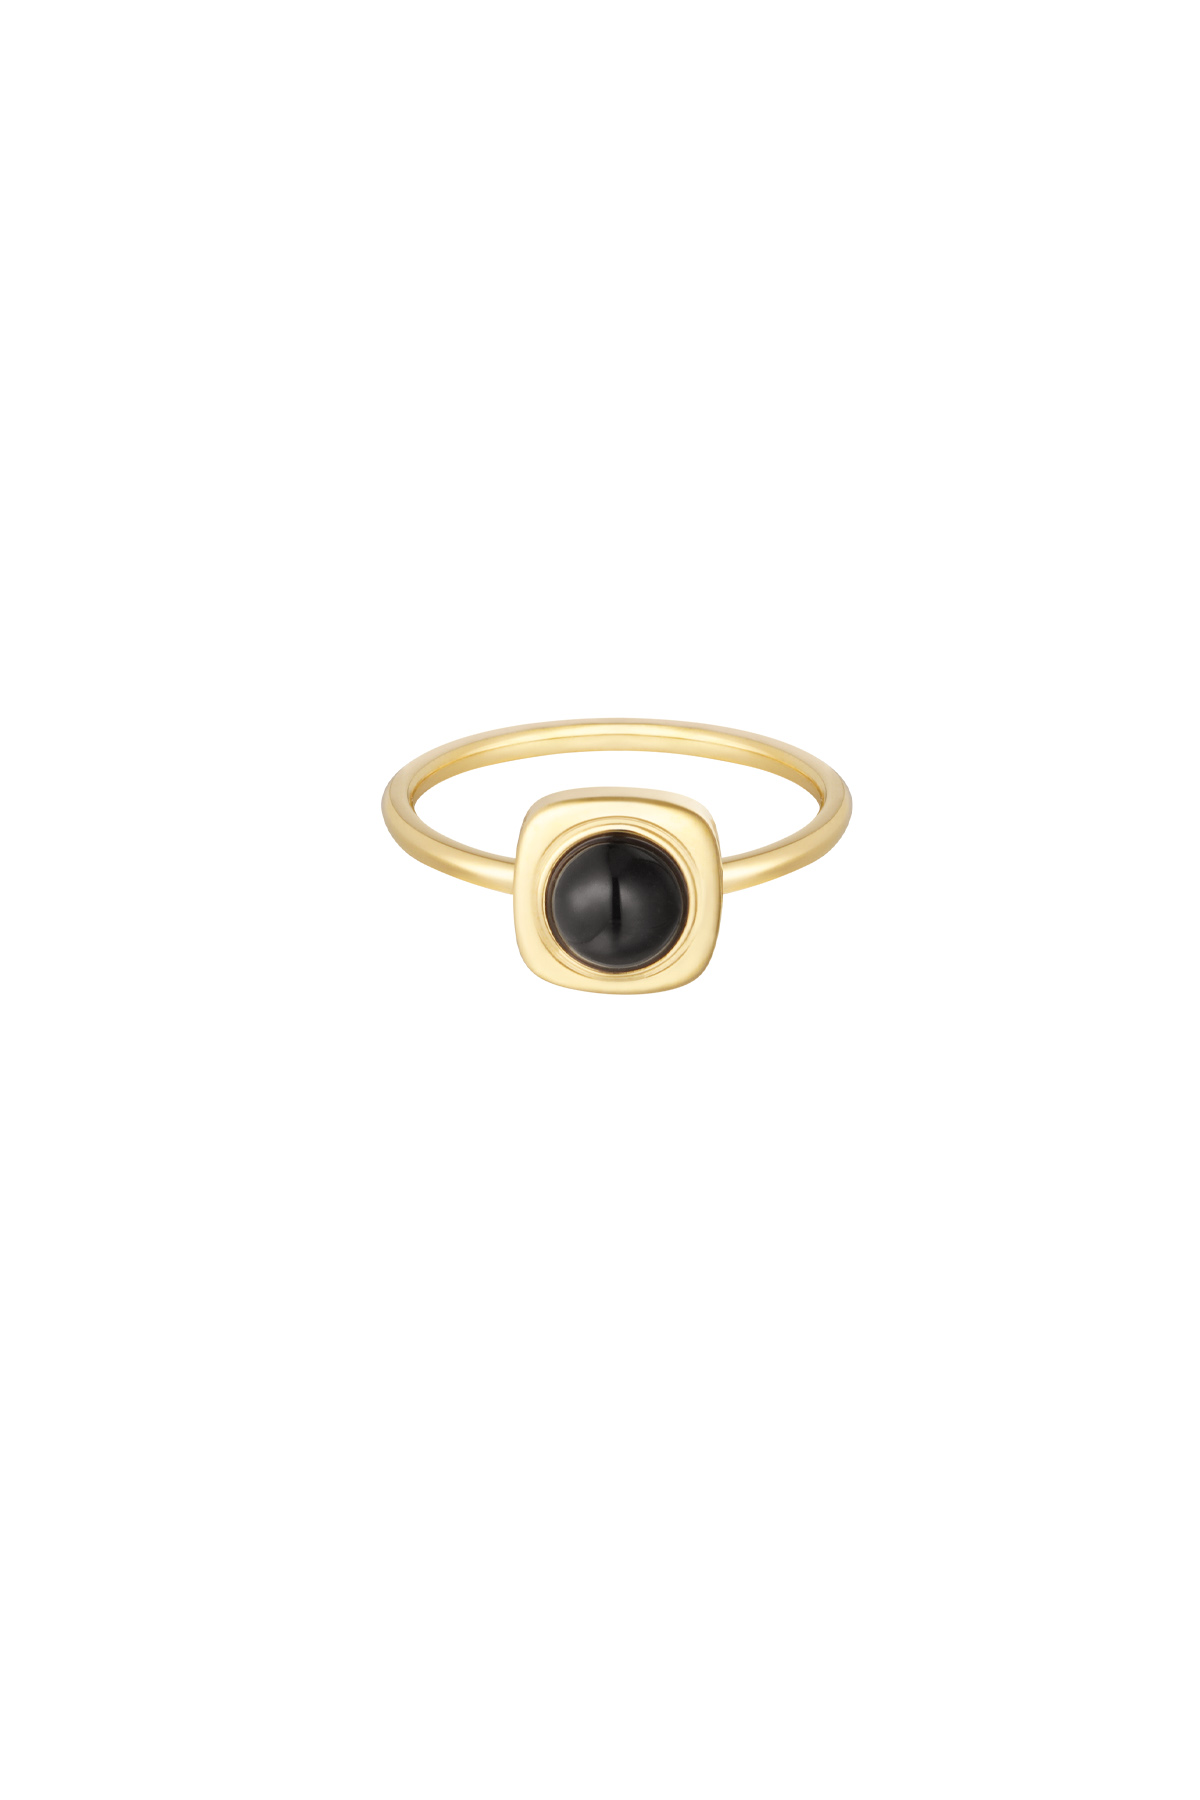 Ring kleurrijke dot - goud/zwart h5 